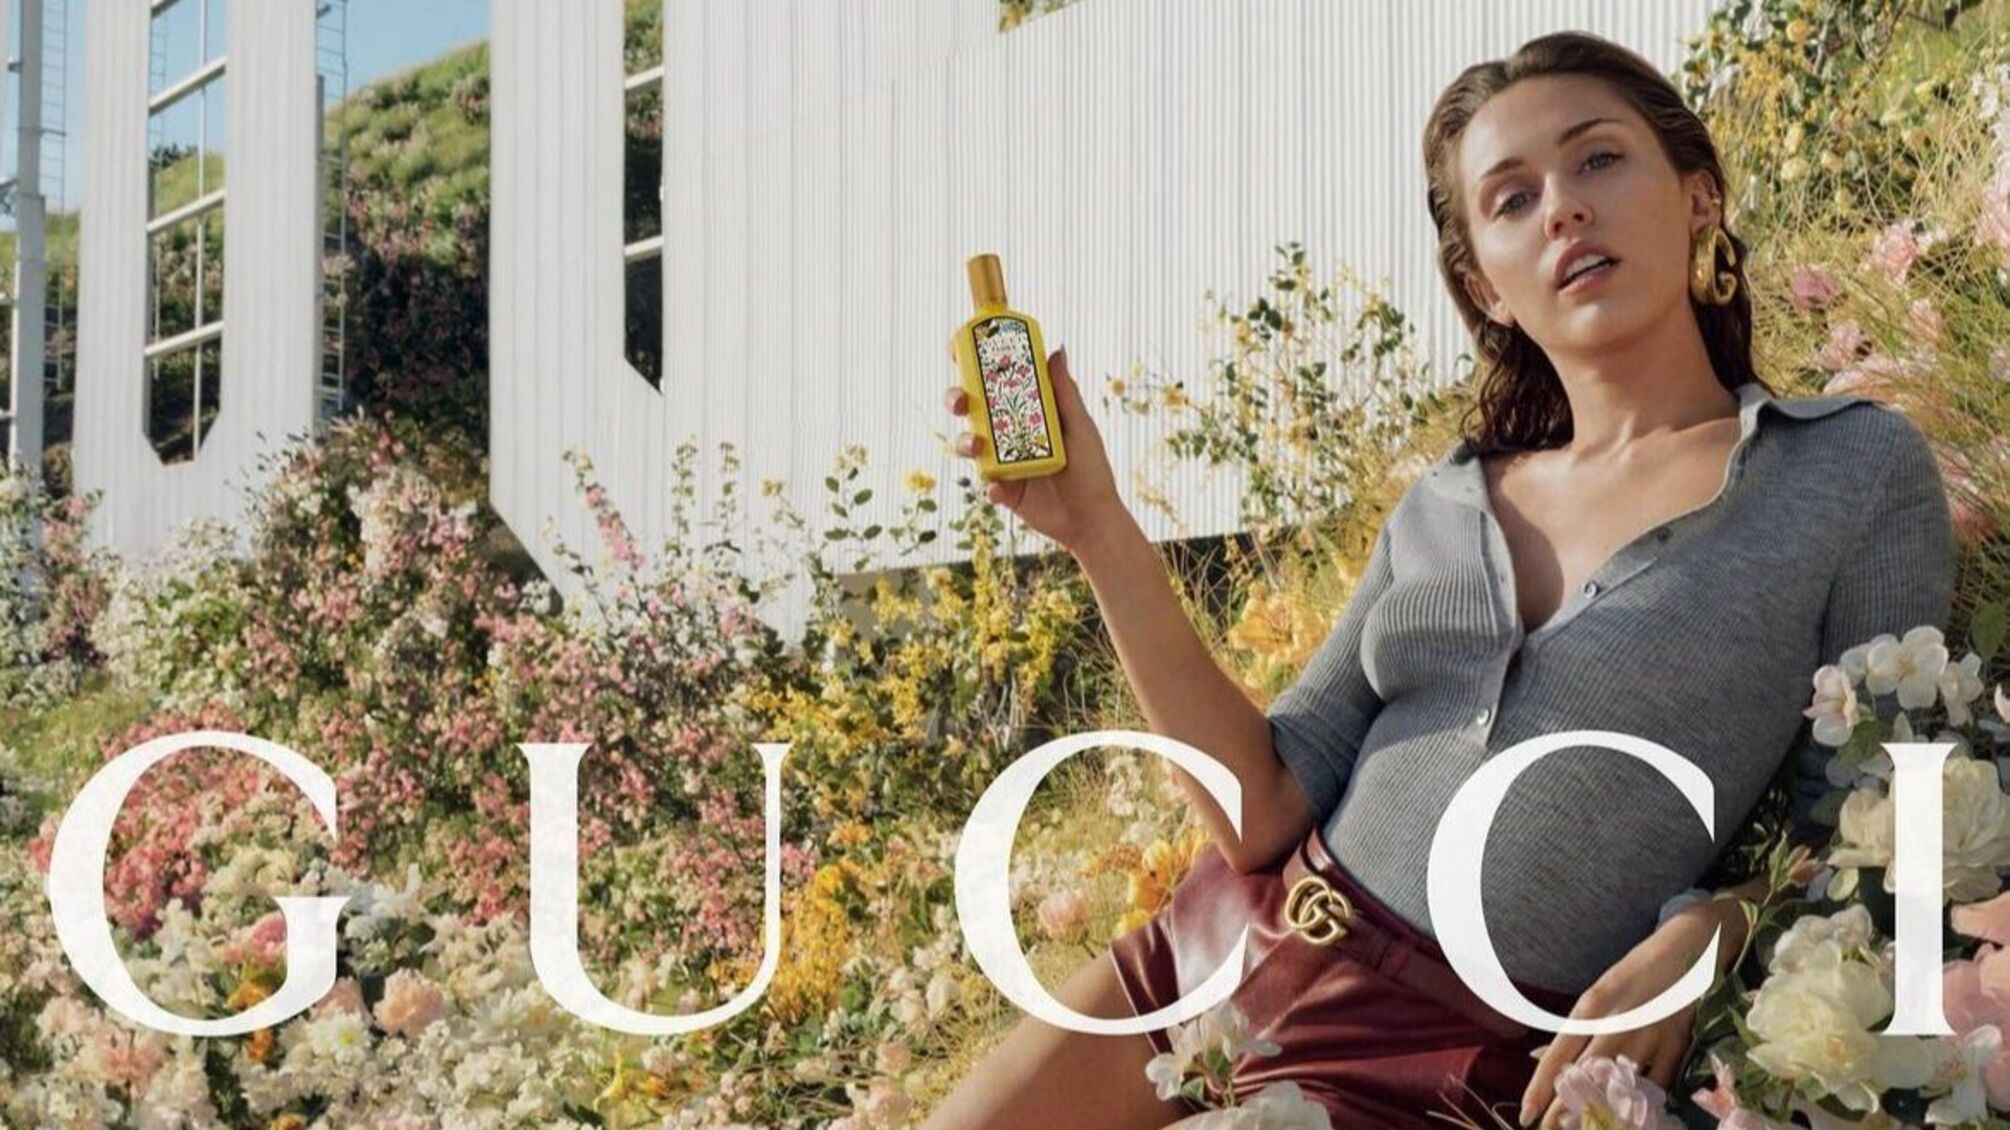 Майлі Сайрус повторила свій кліп “Flowers” у новій рекламі парфумів Cucci 